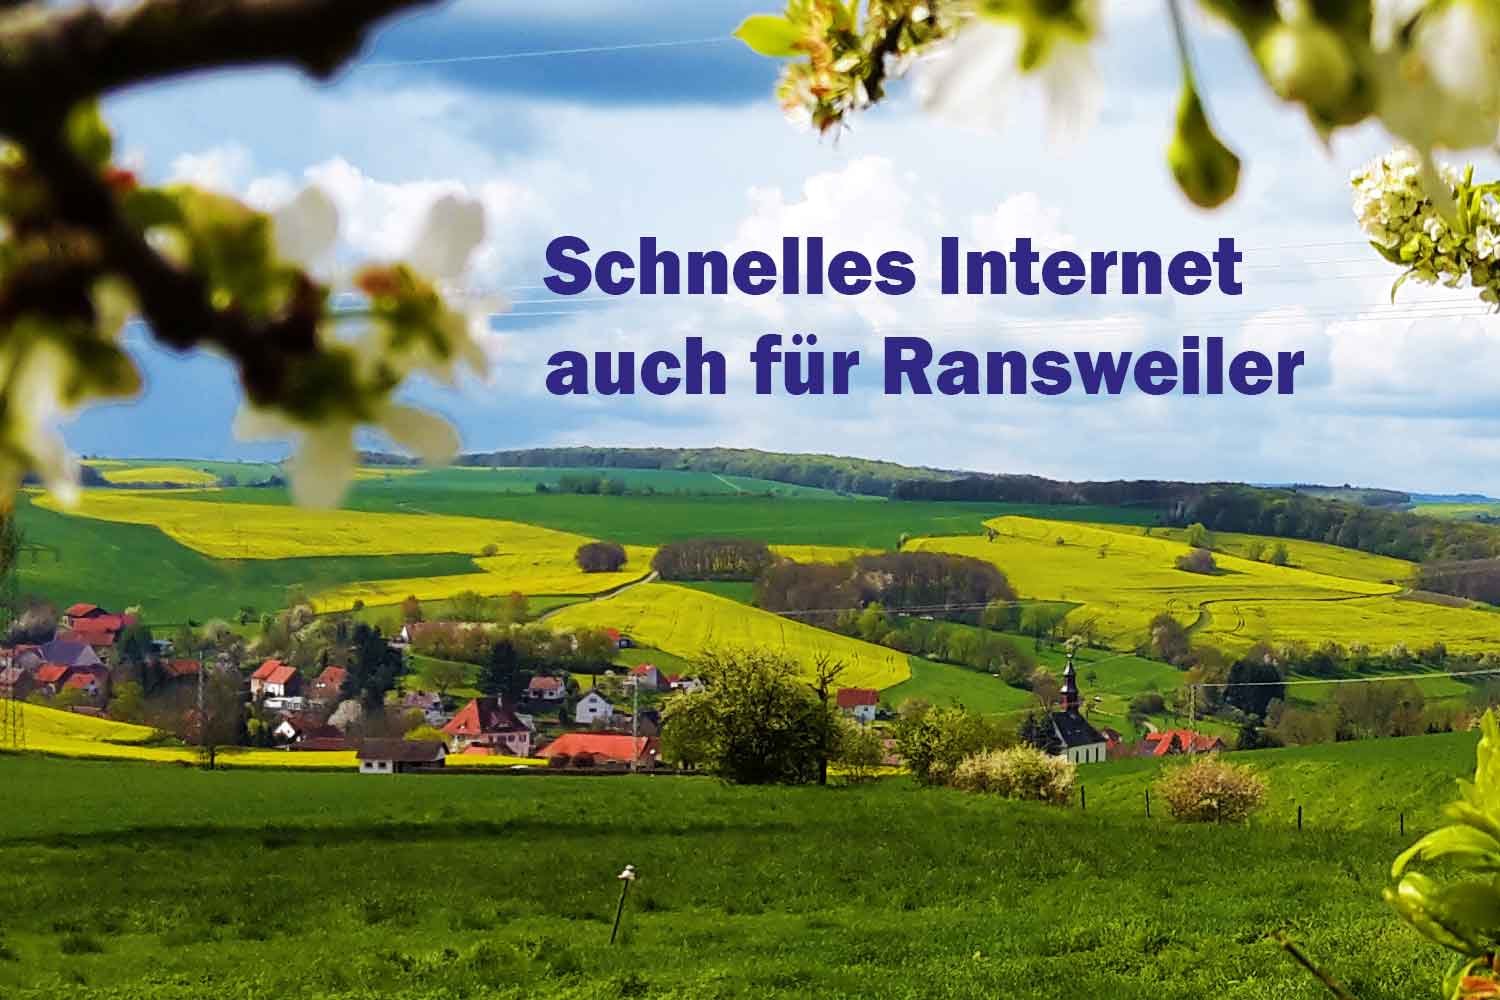 Schnelles Internet auch für Ransweiler – Arbeitskreis